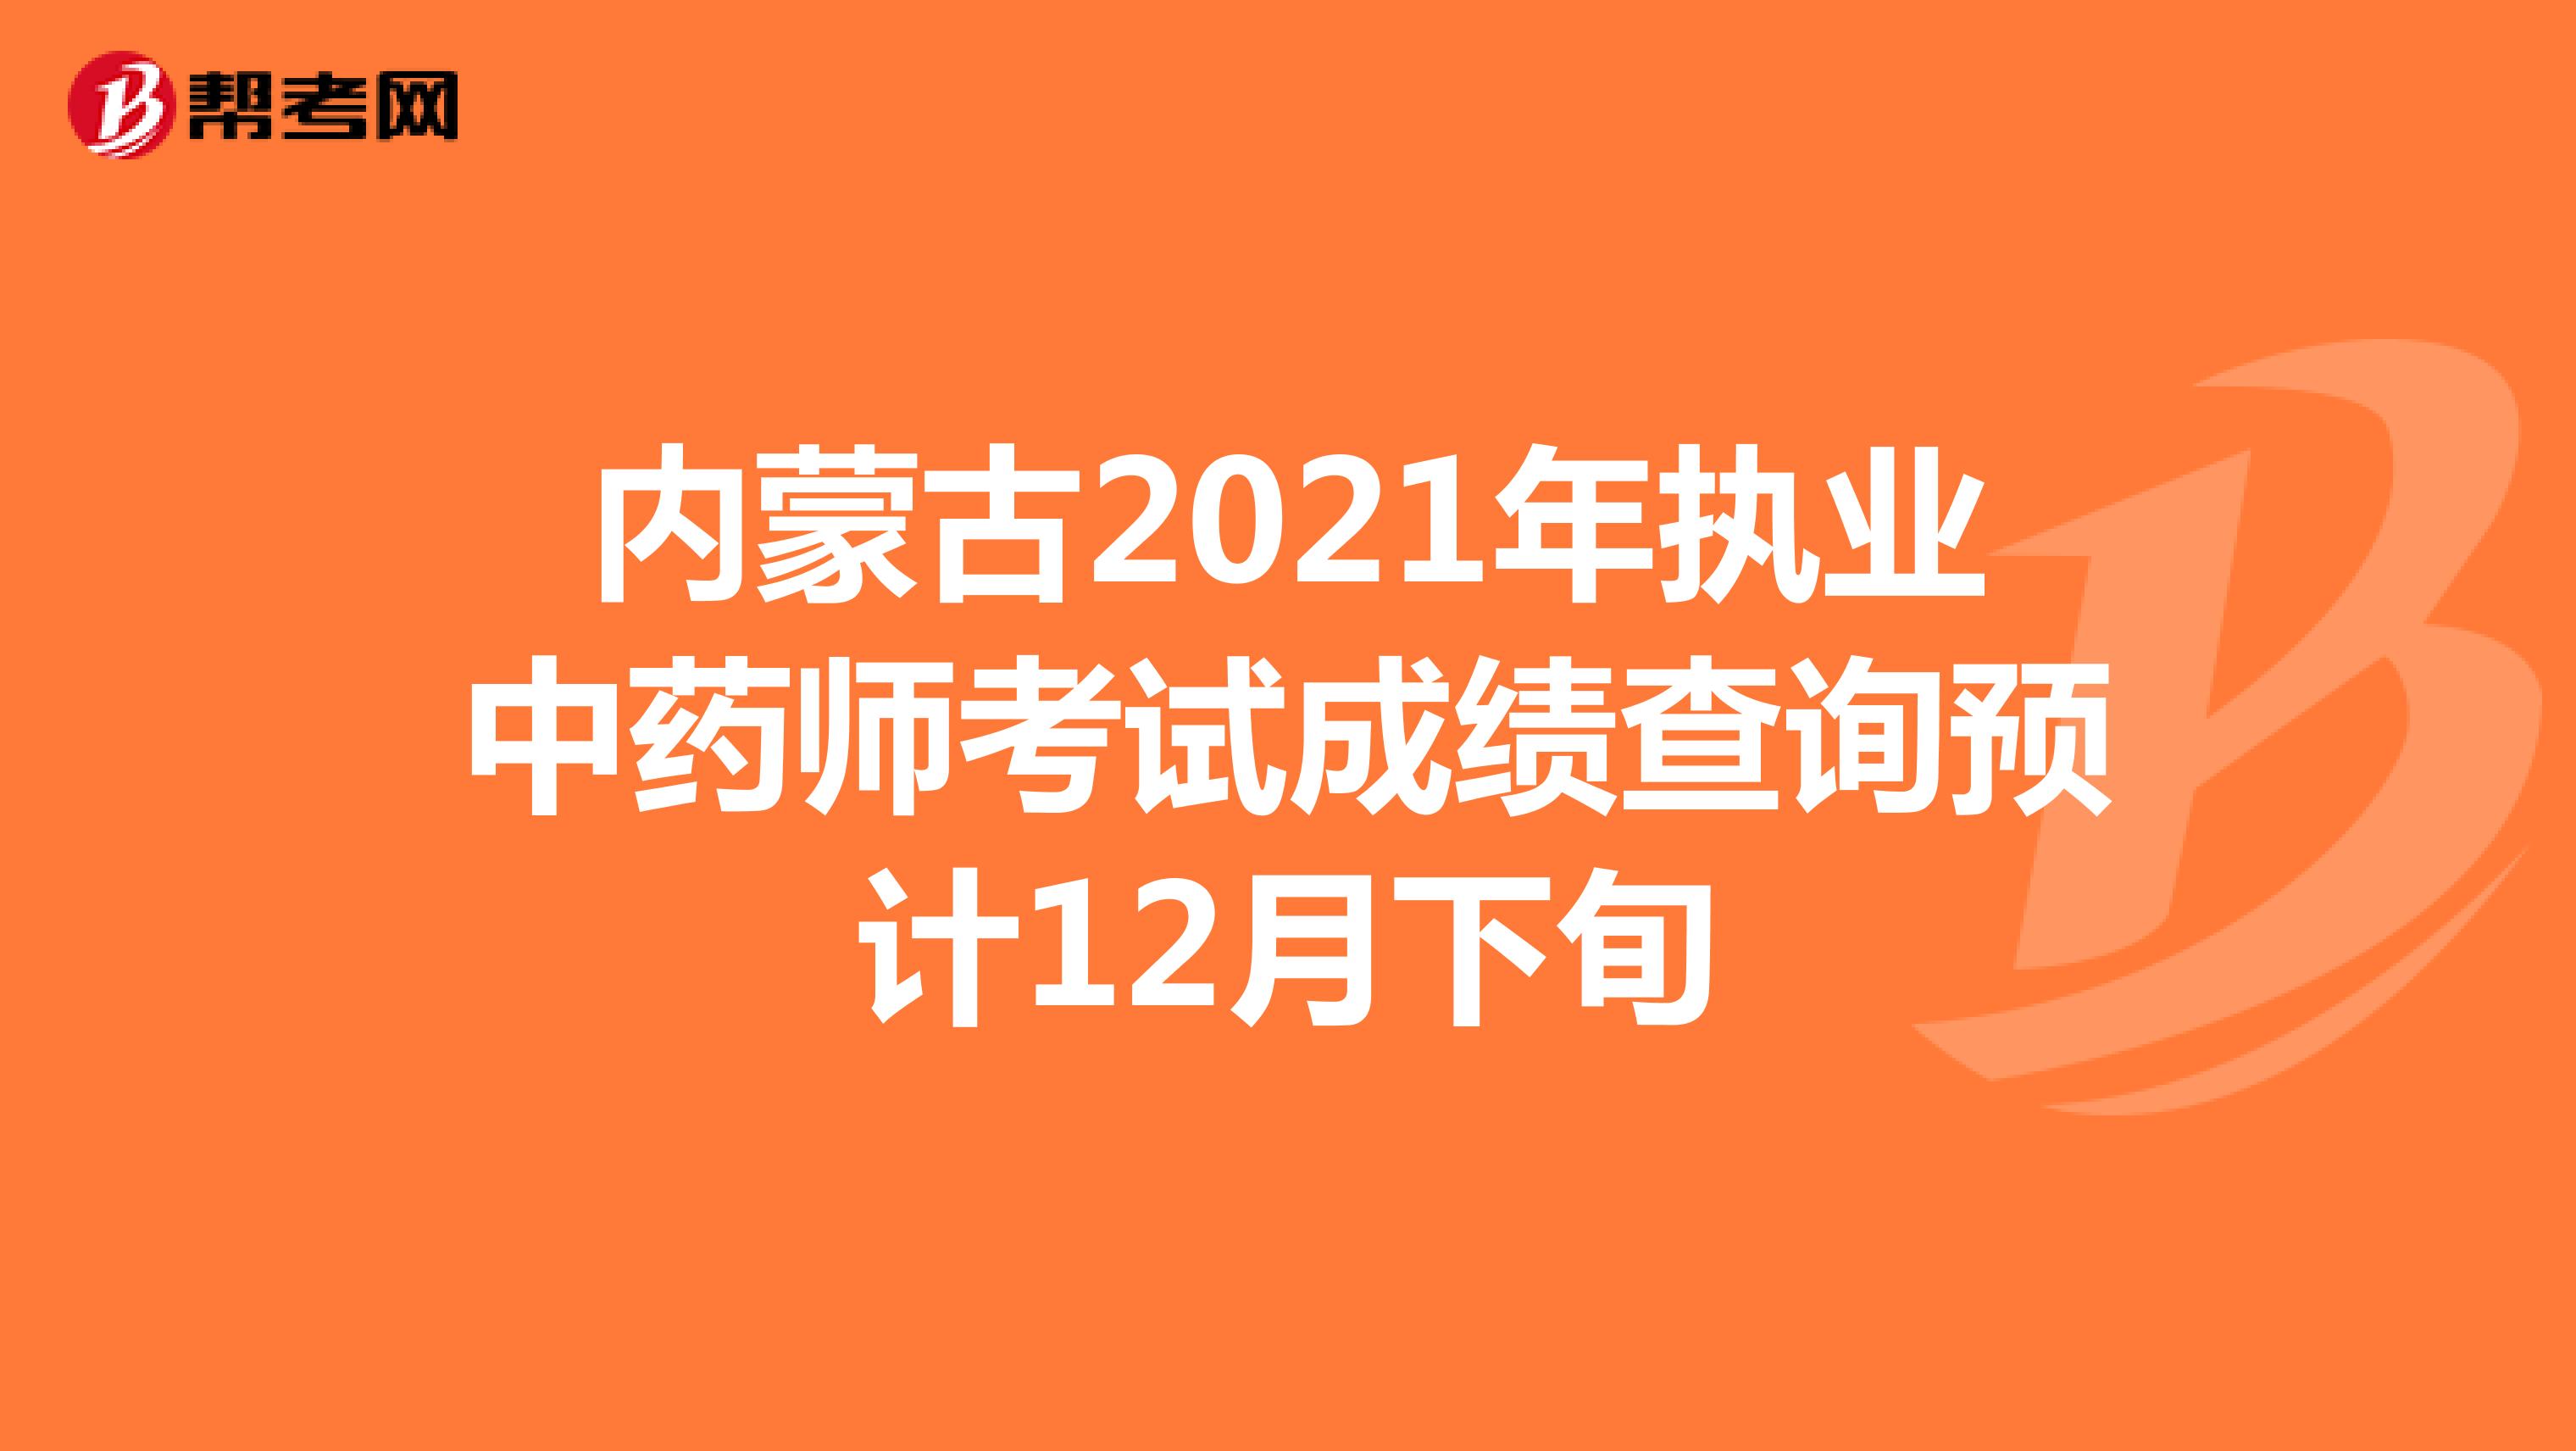 内蒙古2021年执业中药师考试成绩查询预计12月下旬